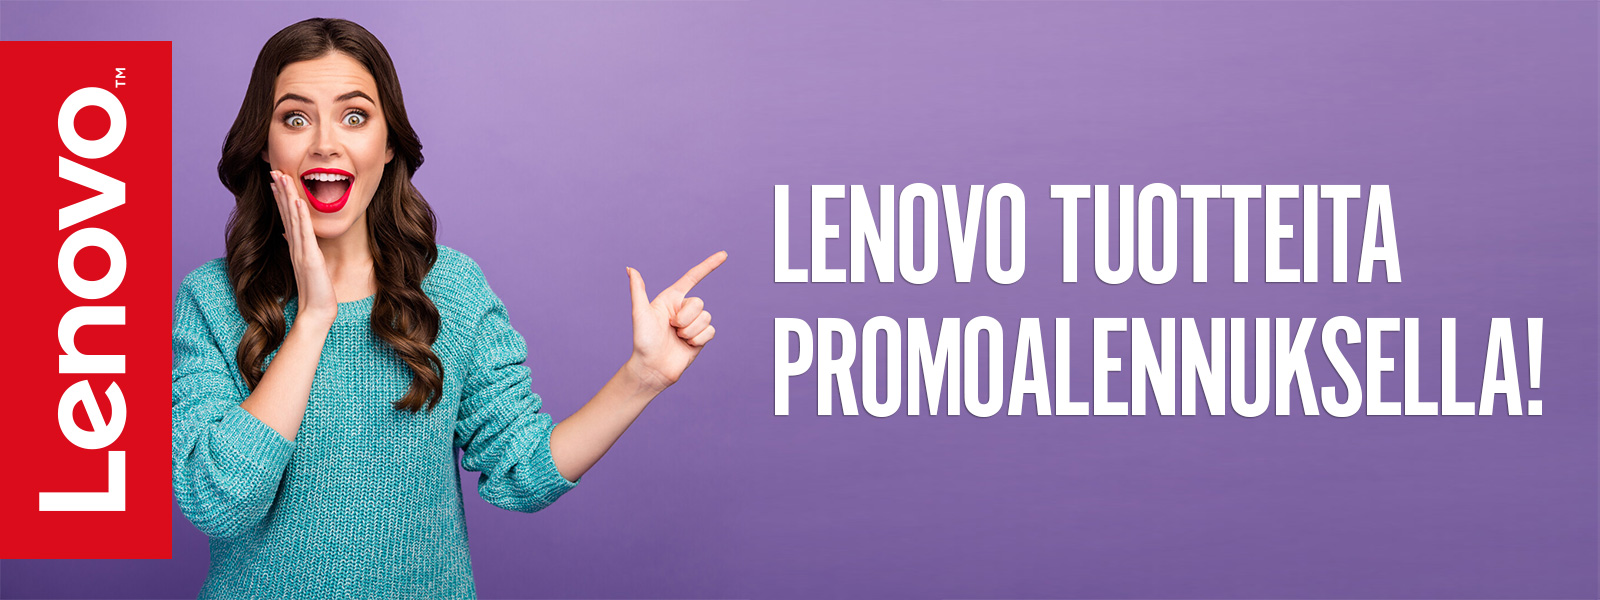 lenovo_promo_header